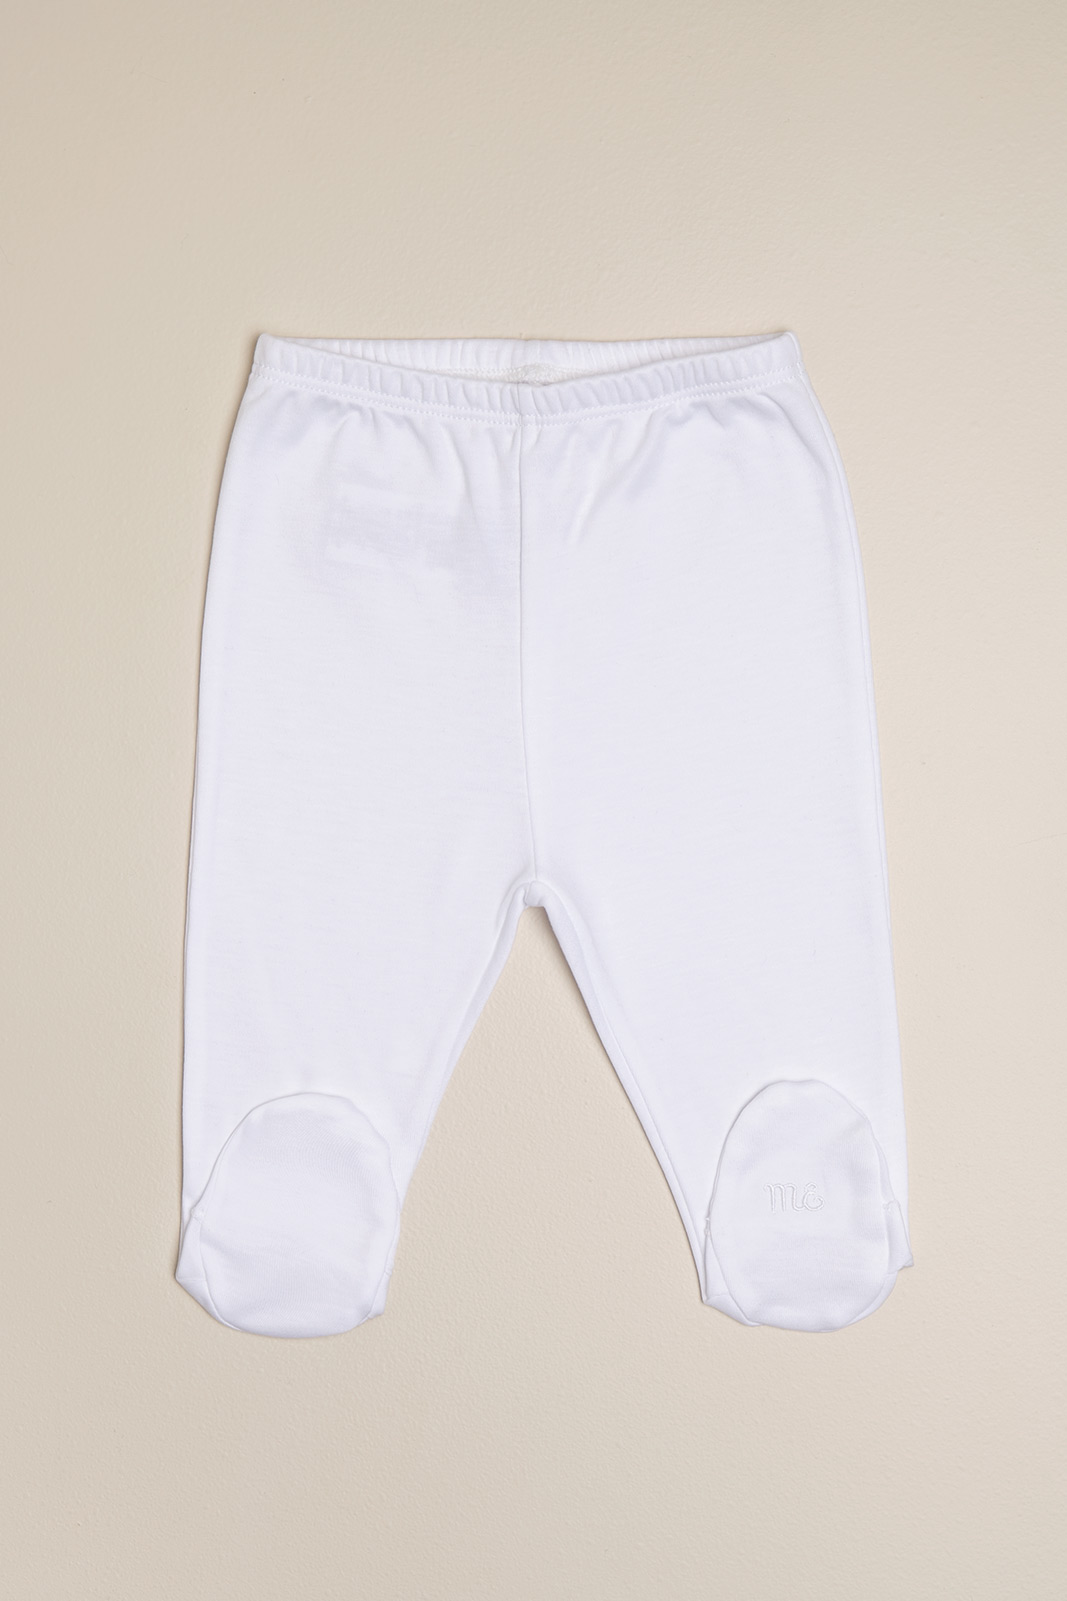 Pantalon basico con pie blanco